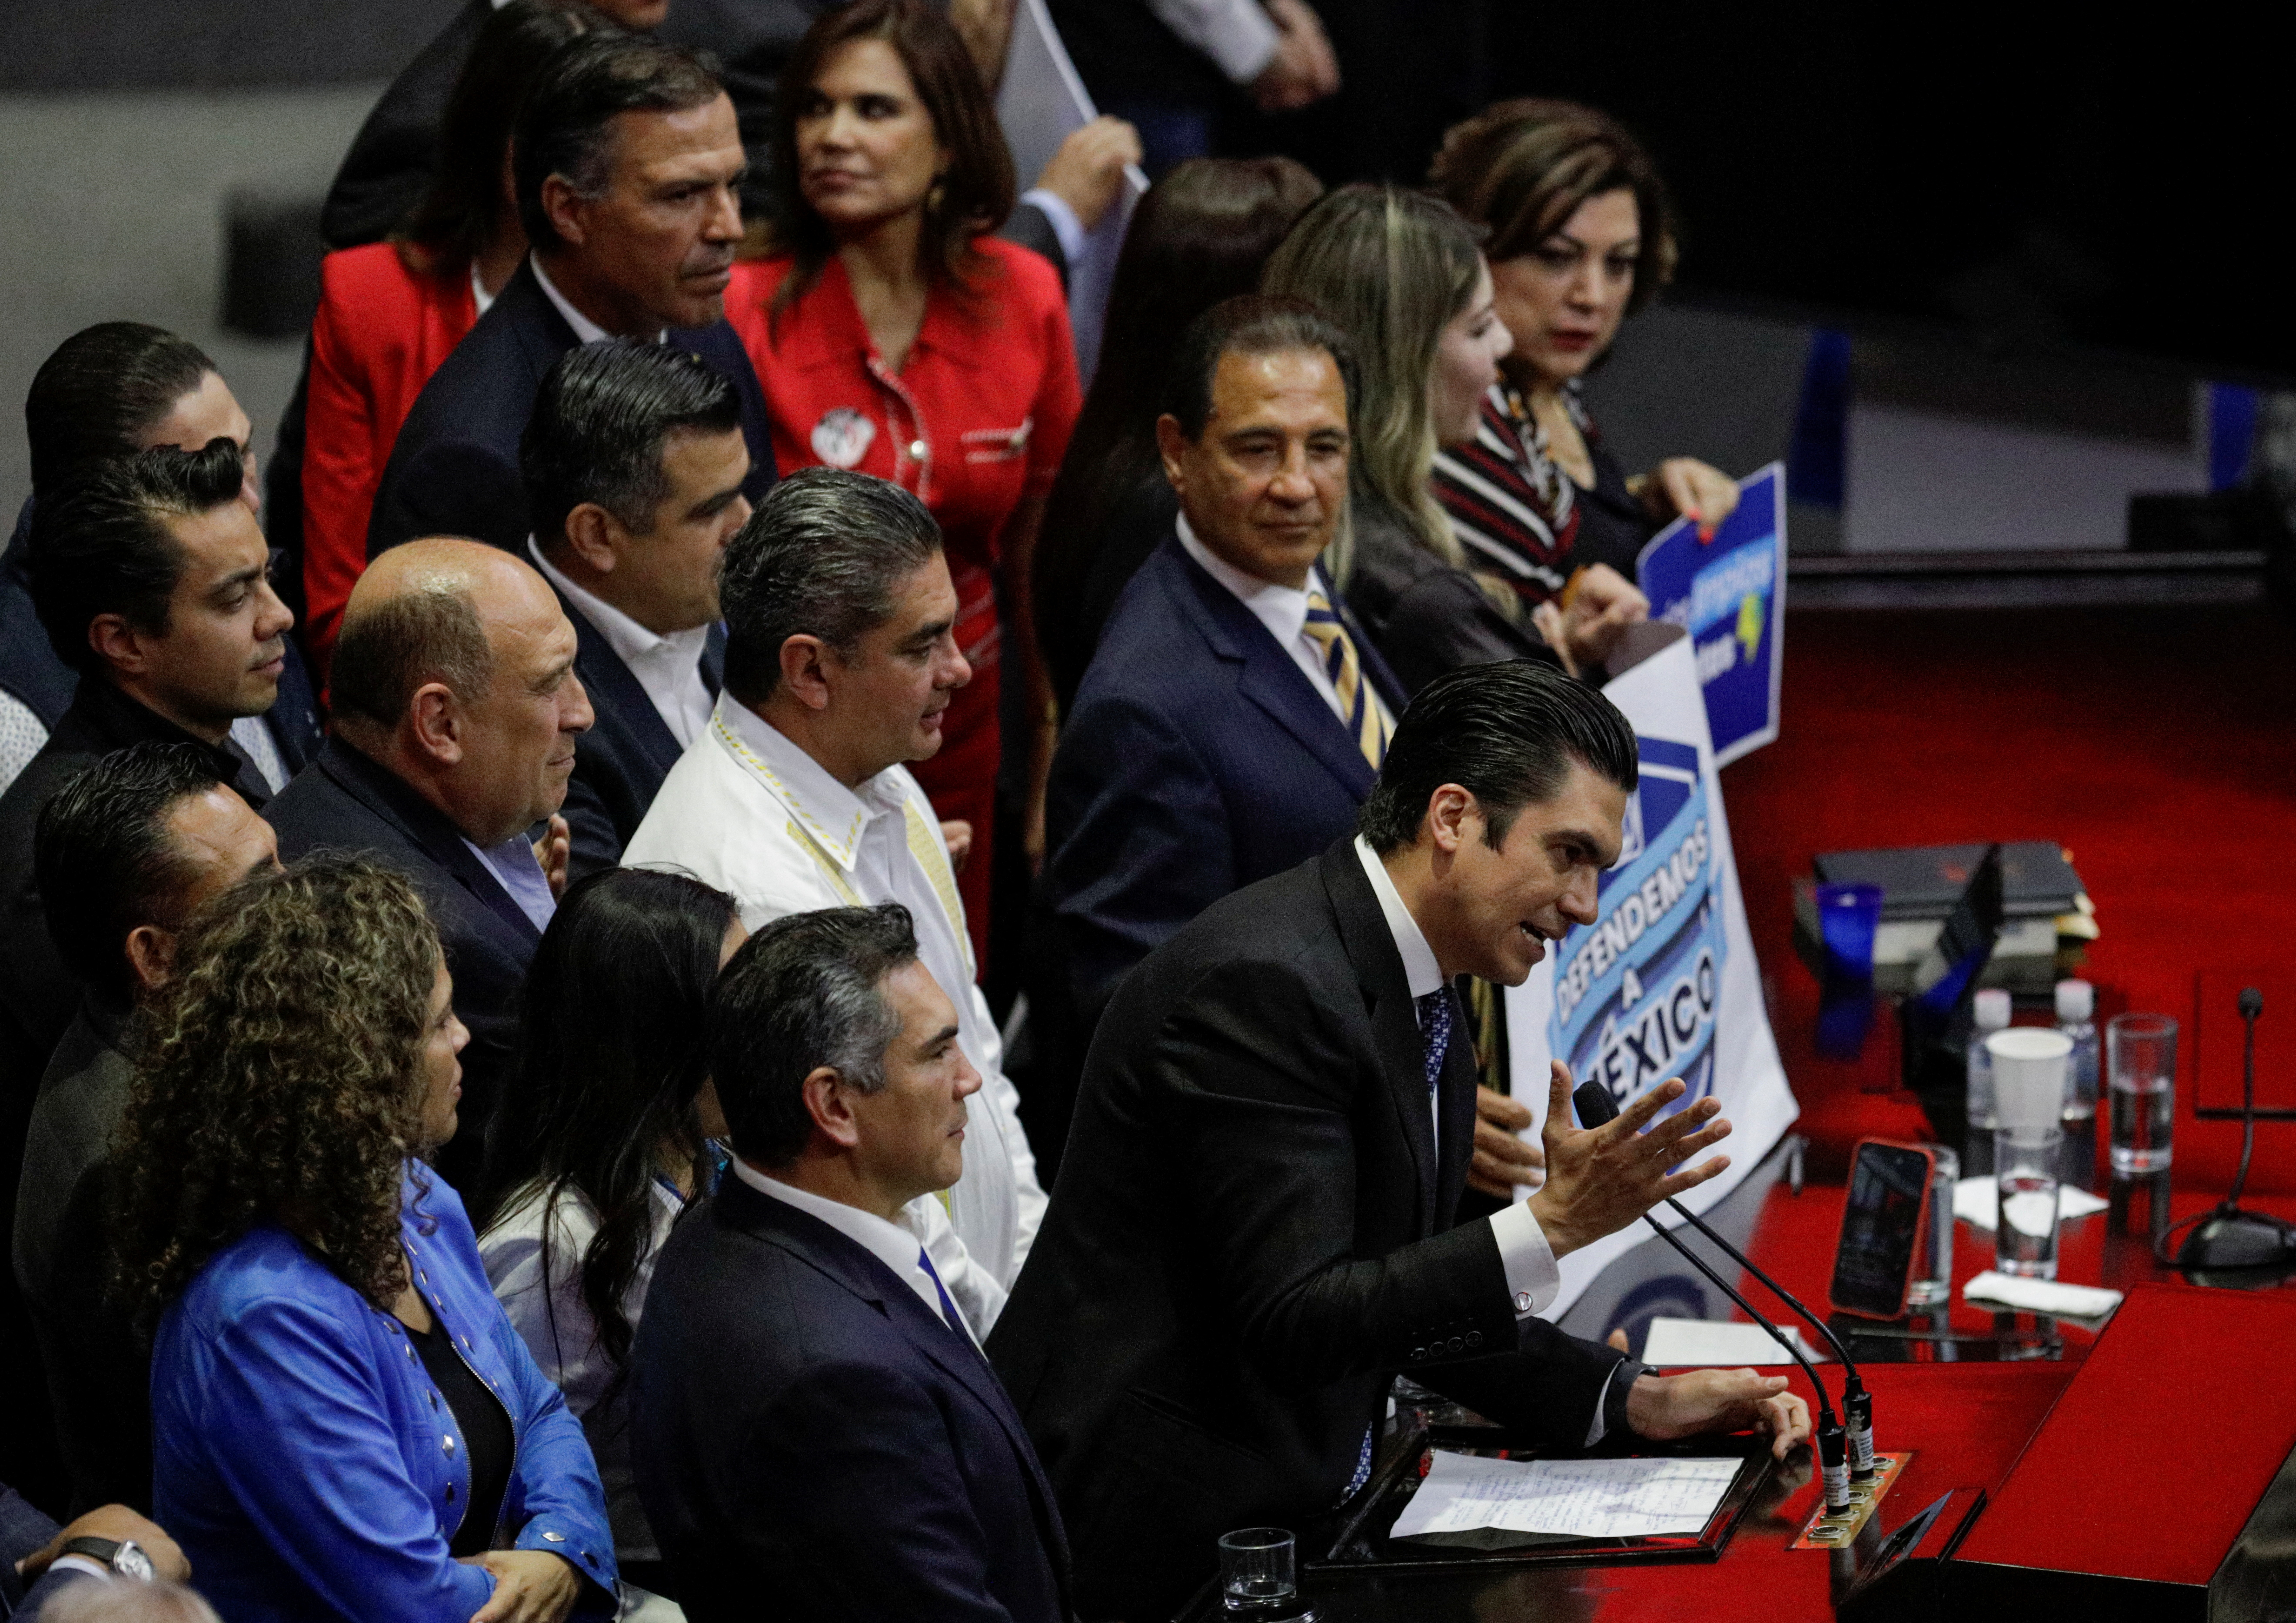 Acompañado de las bancadas del PRD y PRI, el líder del PAN aseguró que la coalición Va por México sigue vigente  (Foto: Reuters / Luis Cortes)